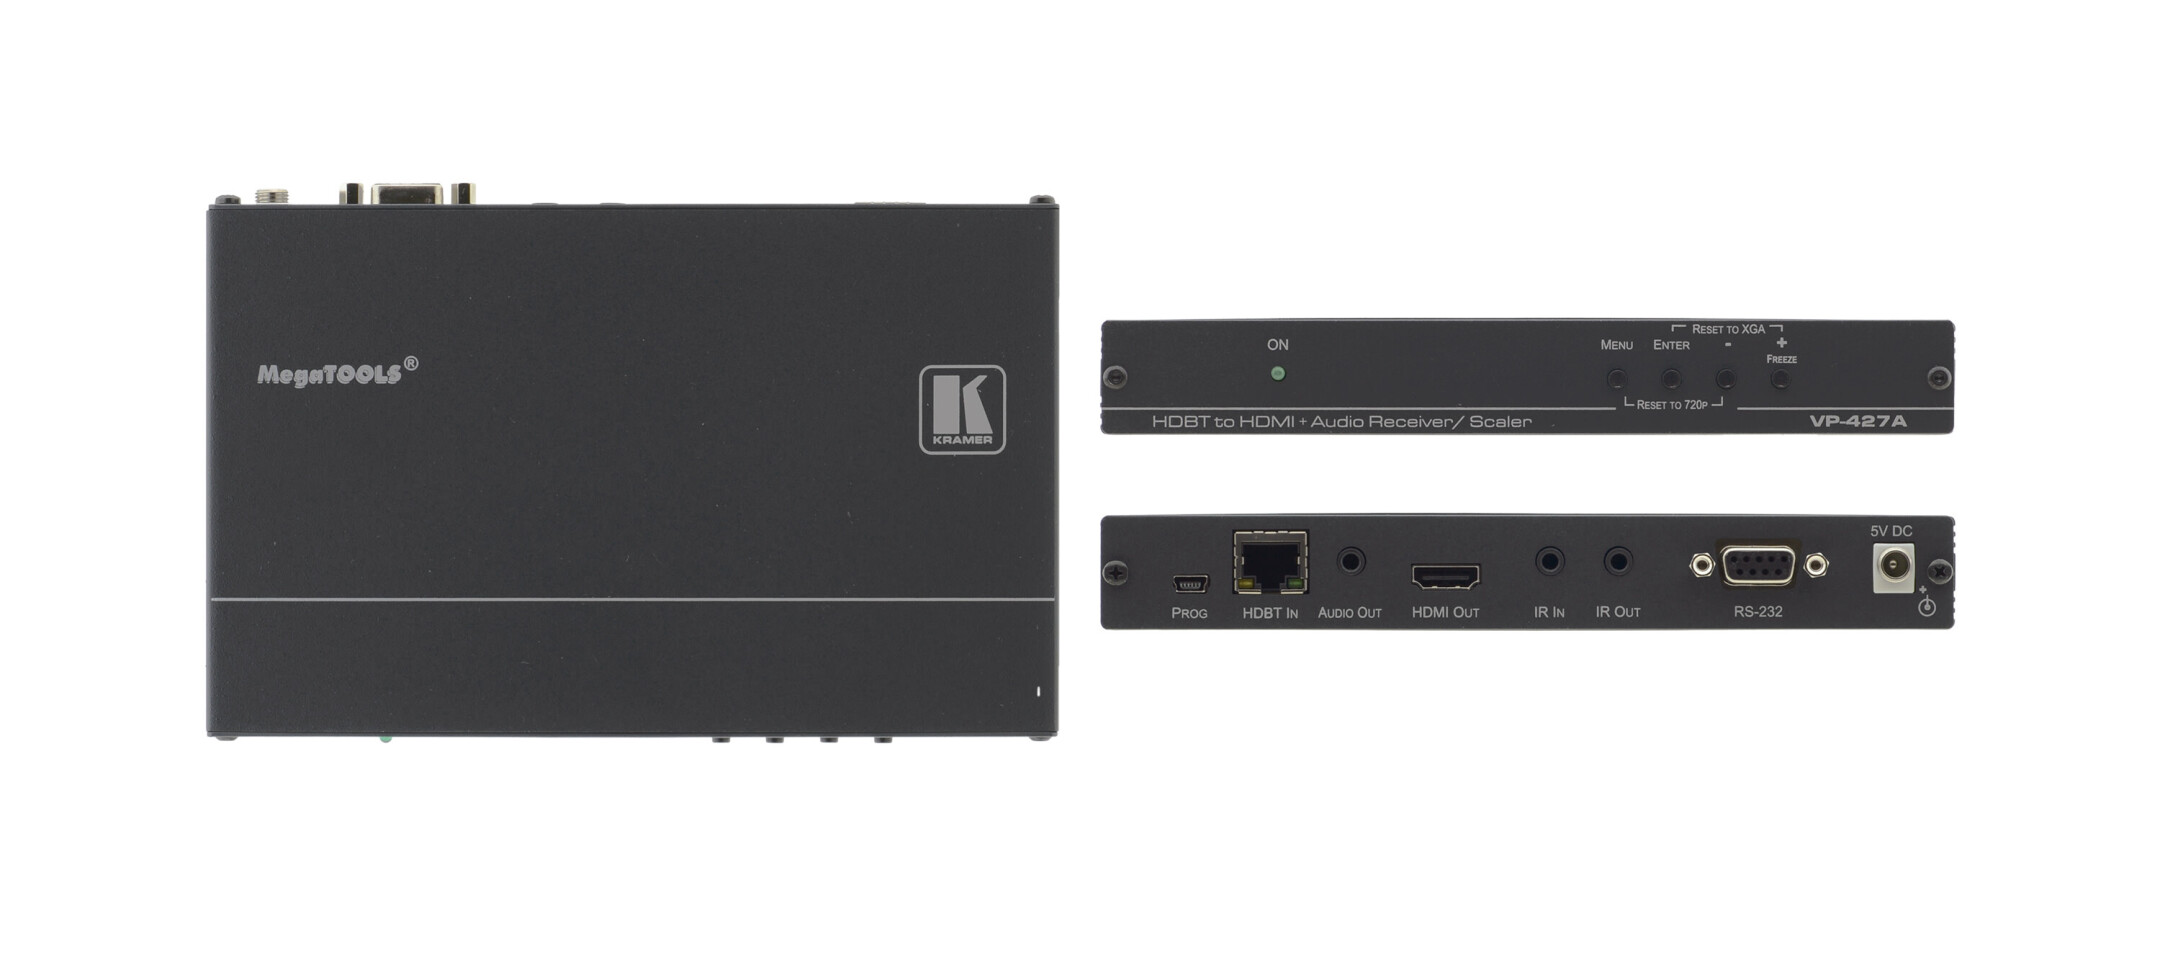 Kramer-VP-427A-HDBaseT-Empfanger-mit-Scaler-fur-HDMI-und-Audio